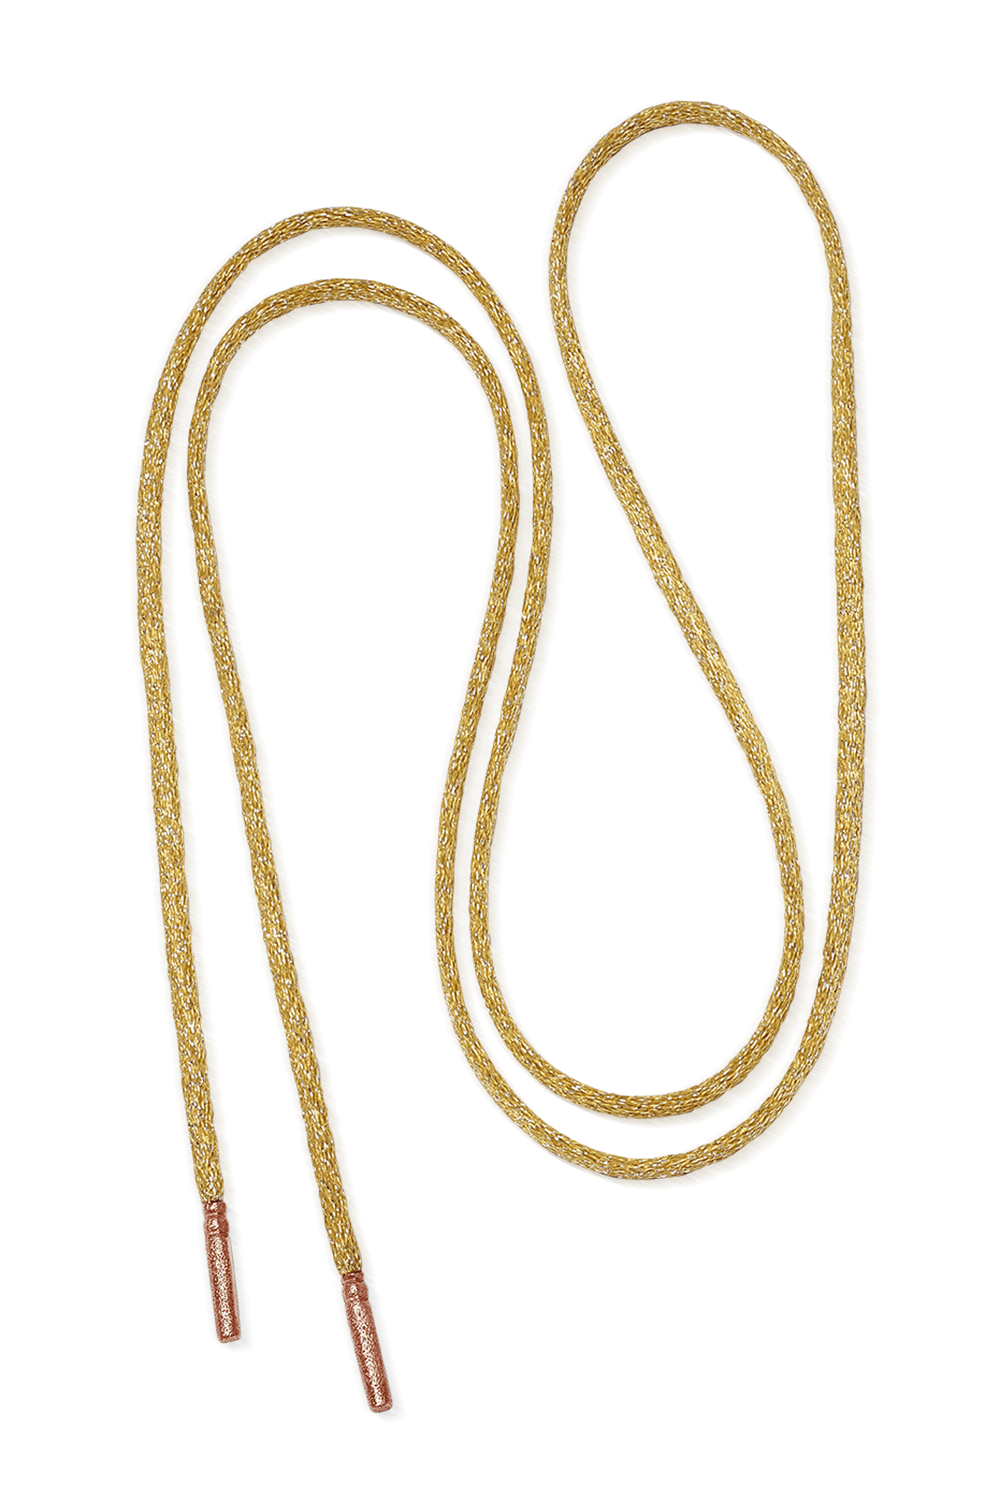 CAROLINA BUCCI-Long Forte Beads Cord - Sun-ROSE GOLD